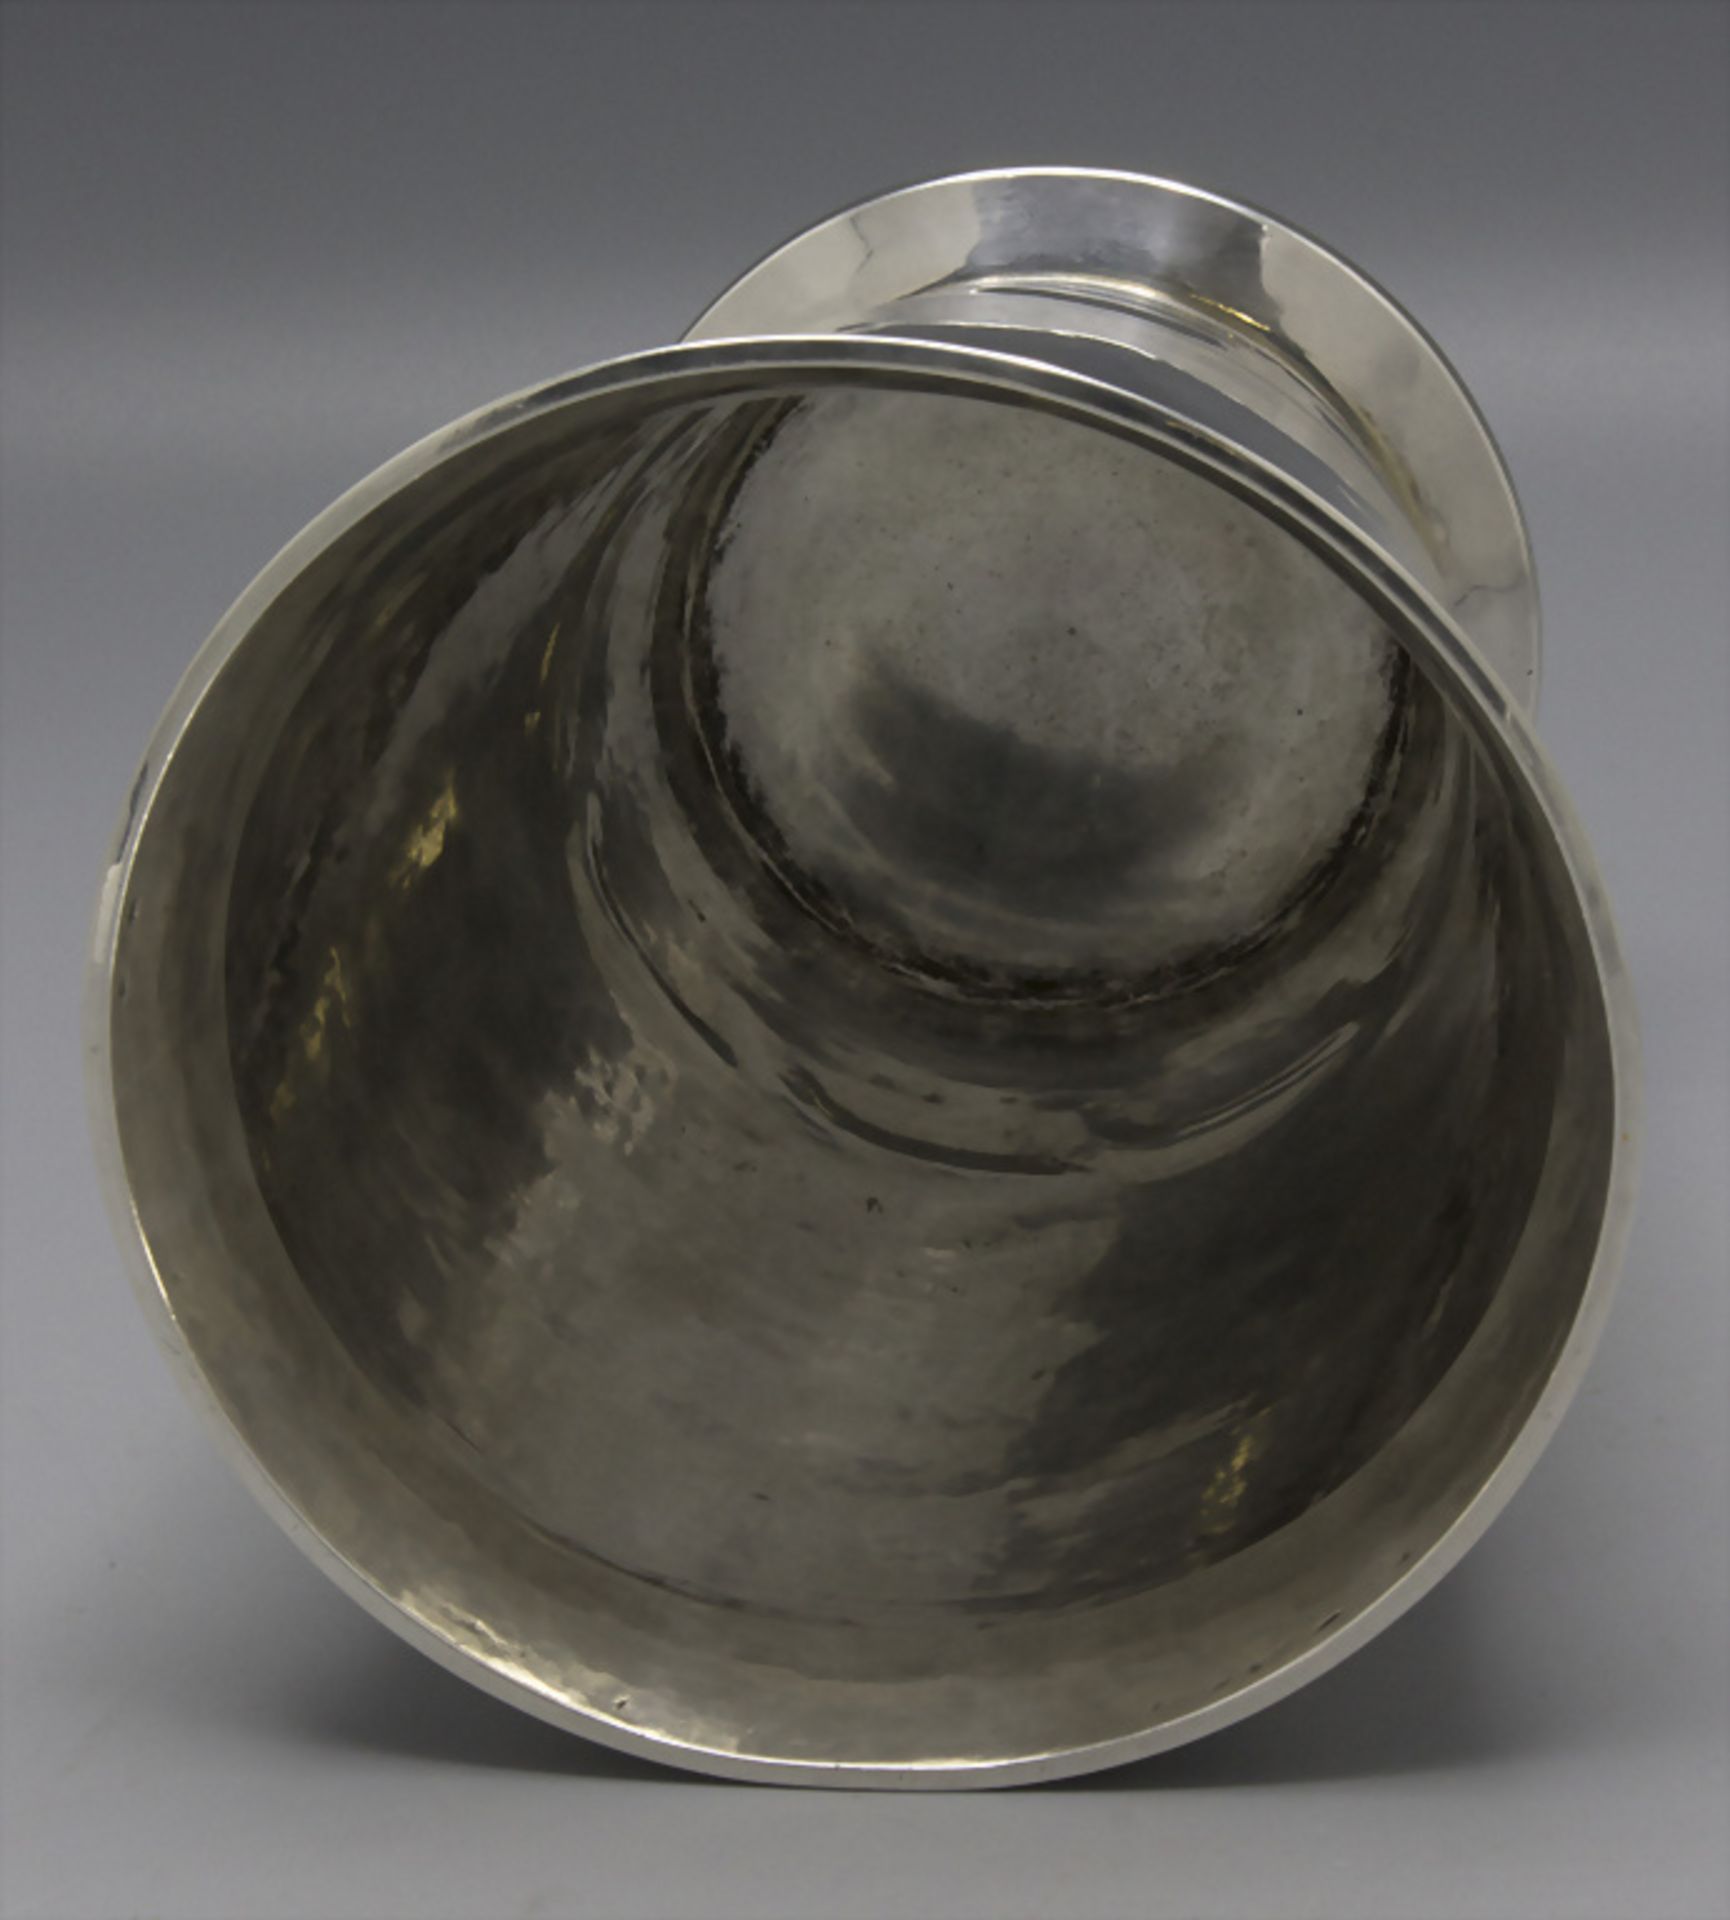 Art Déco Silbervase / Vase en argent massif martelé / A silver vase, Georges René Lecomte, ... - Image 3 of 6